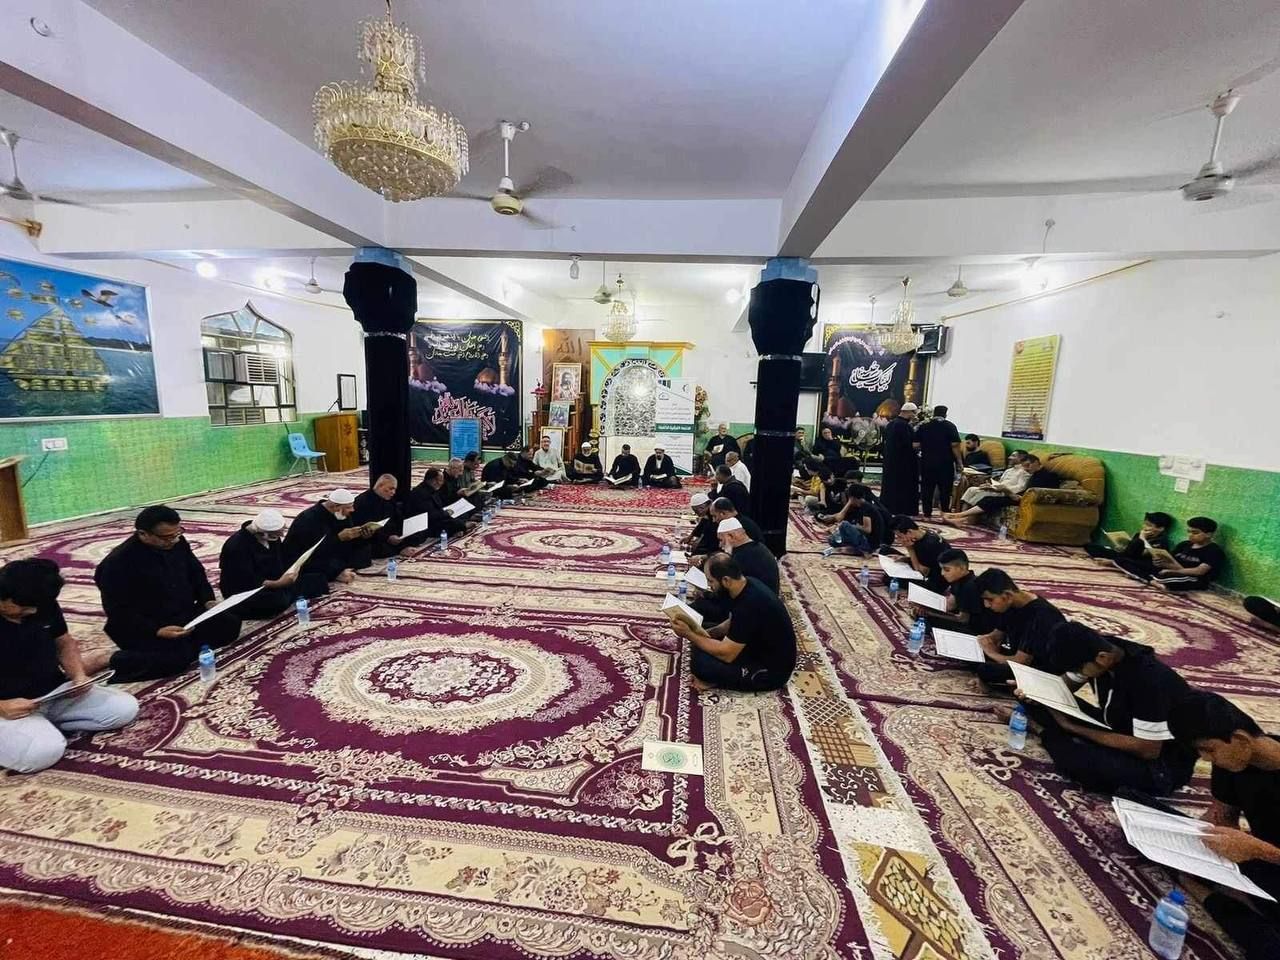 معهد القرآن الكريم يقيم ختمة قرآنية مرتلة في بغداد